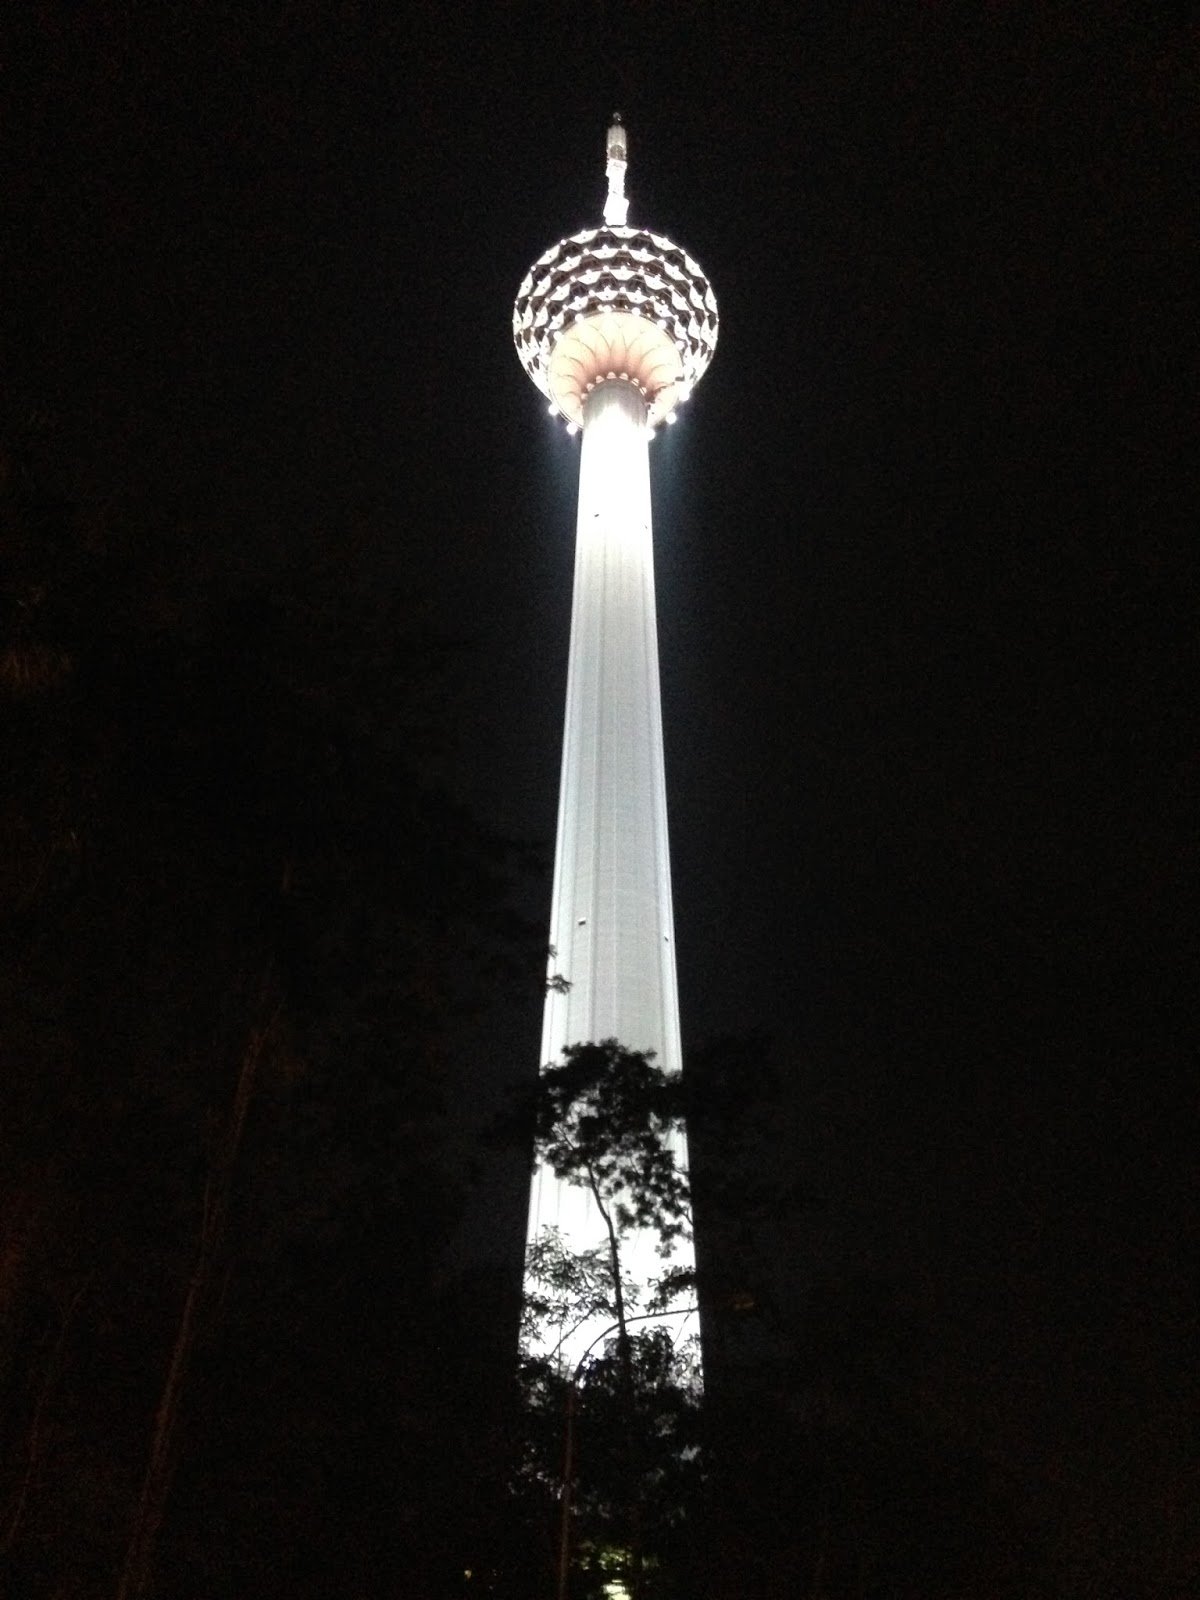 Torre de Kuala Lumpur